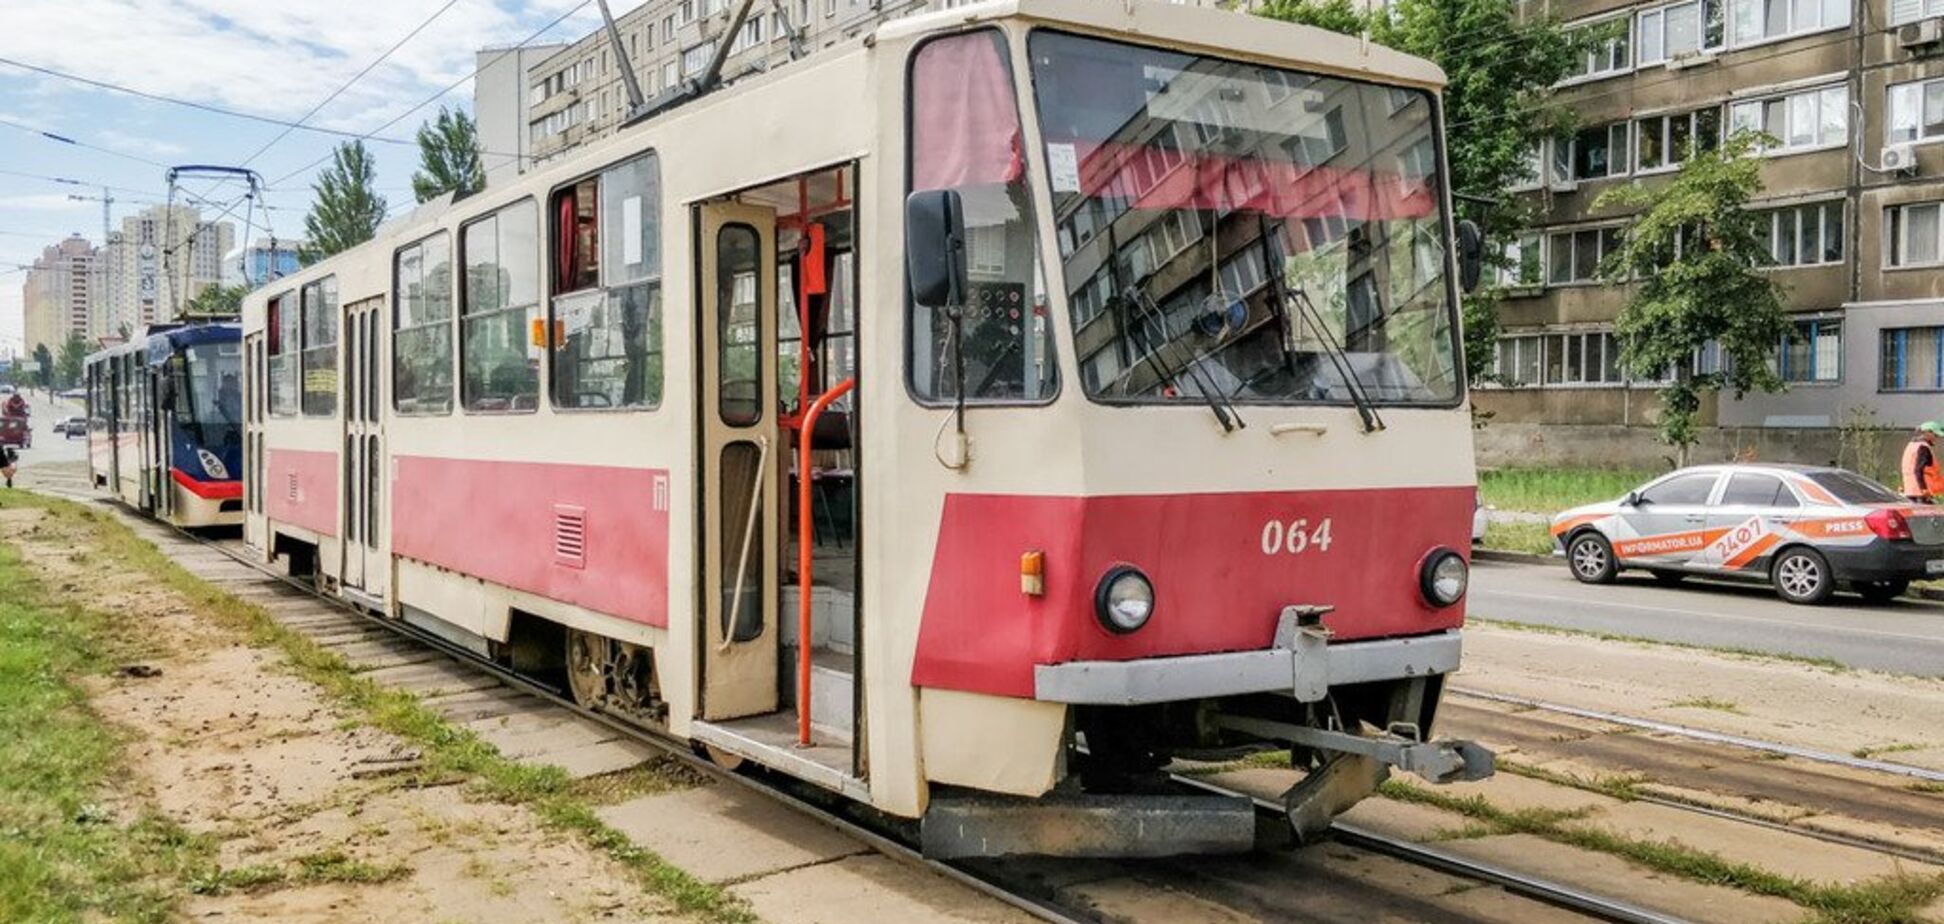 У Києві в трамвая відмовили гальма: постраждала пасажирка